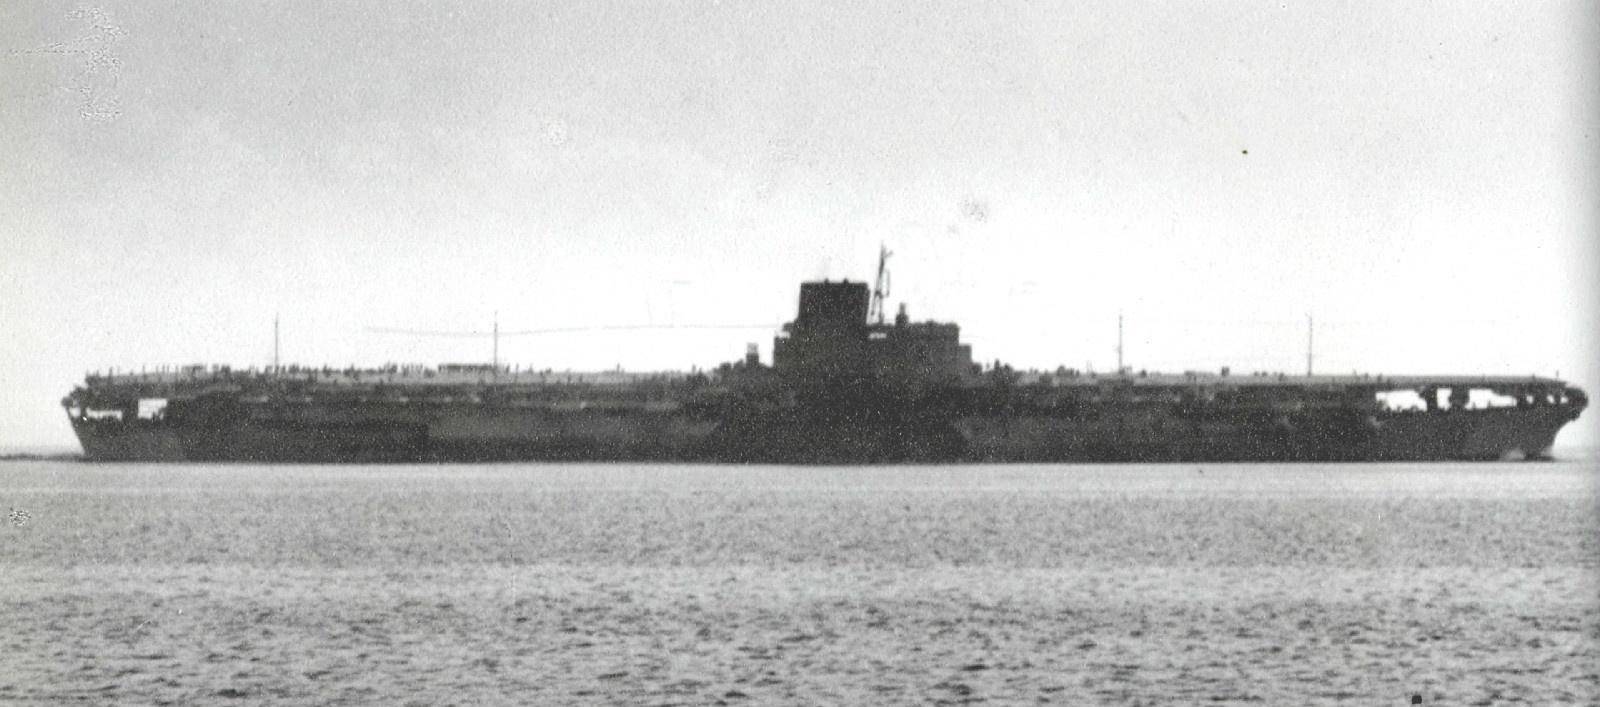 信浓号:二战短命超级航母,亦是最大吨位航母,出海17小时就沉没